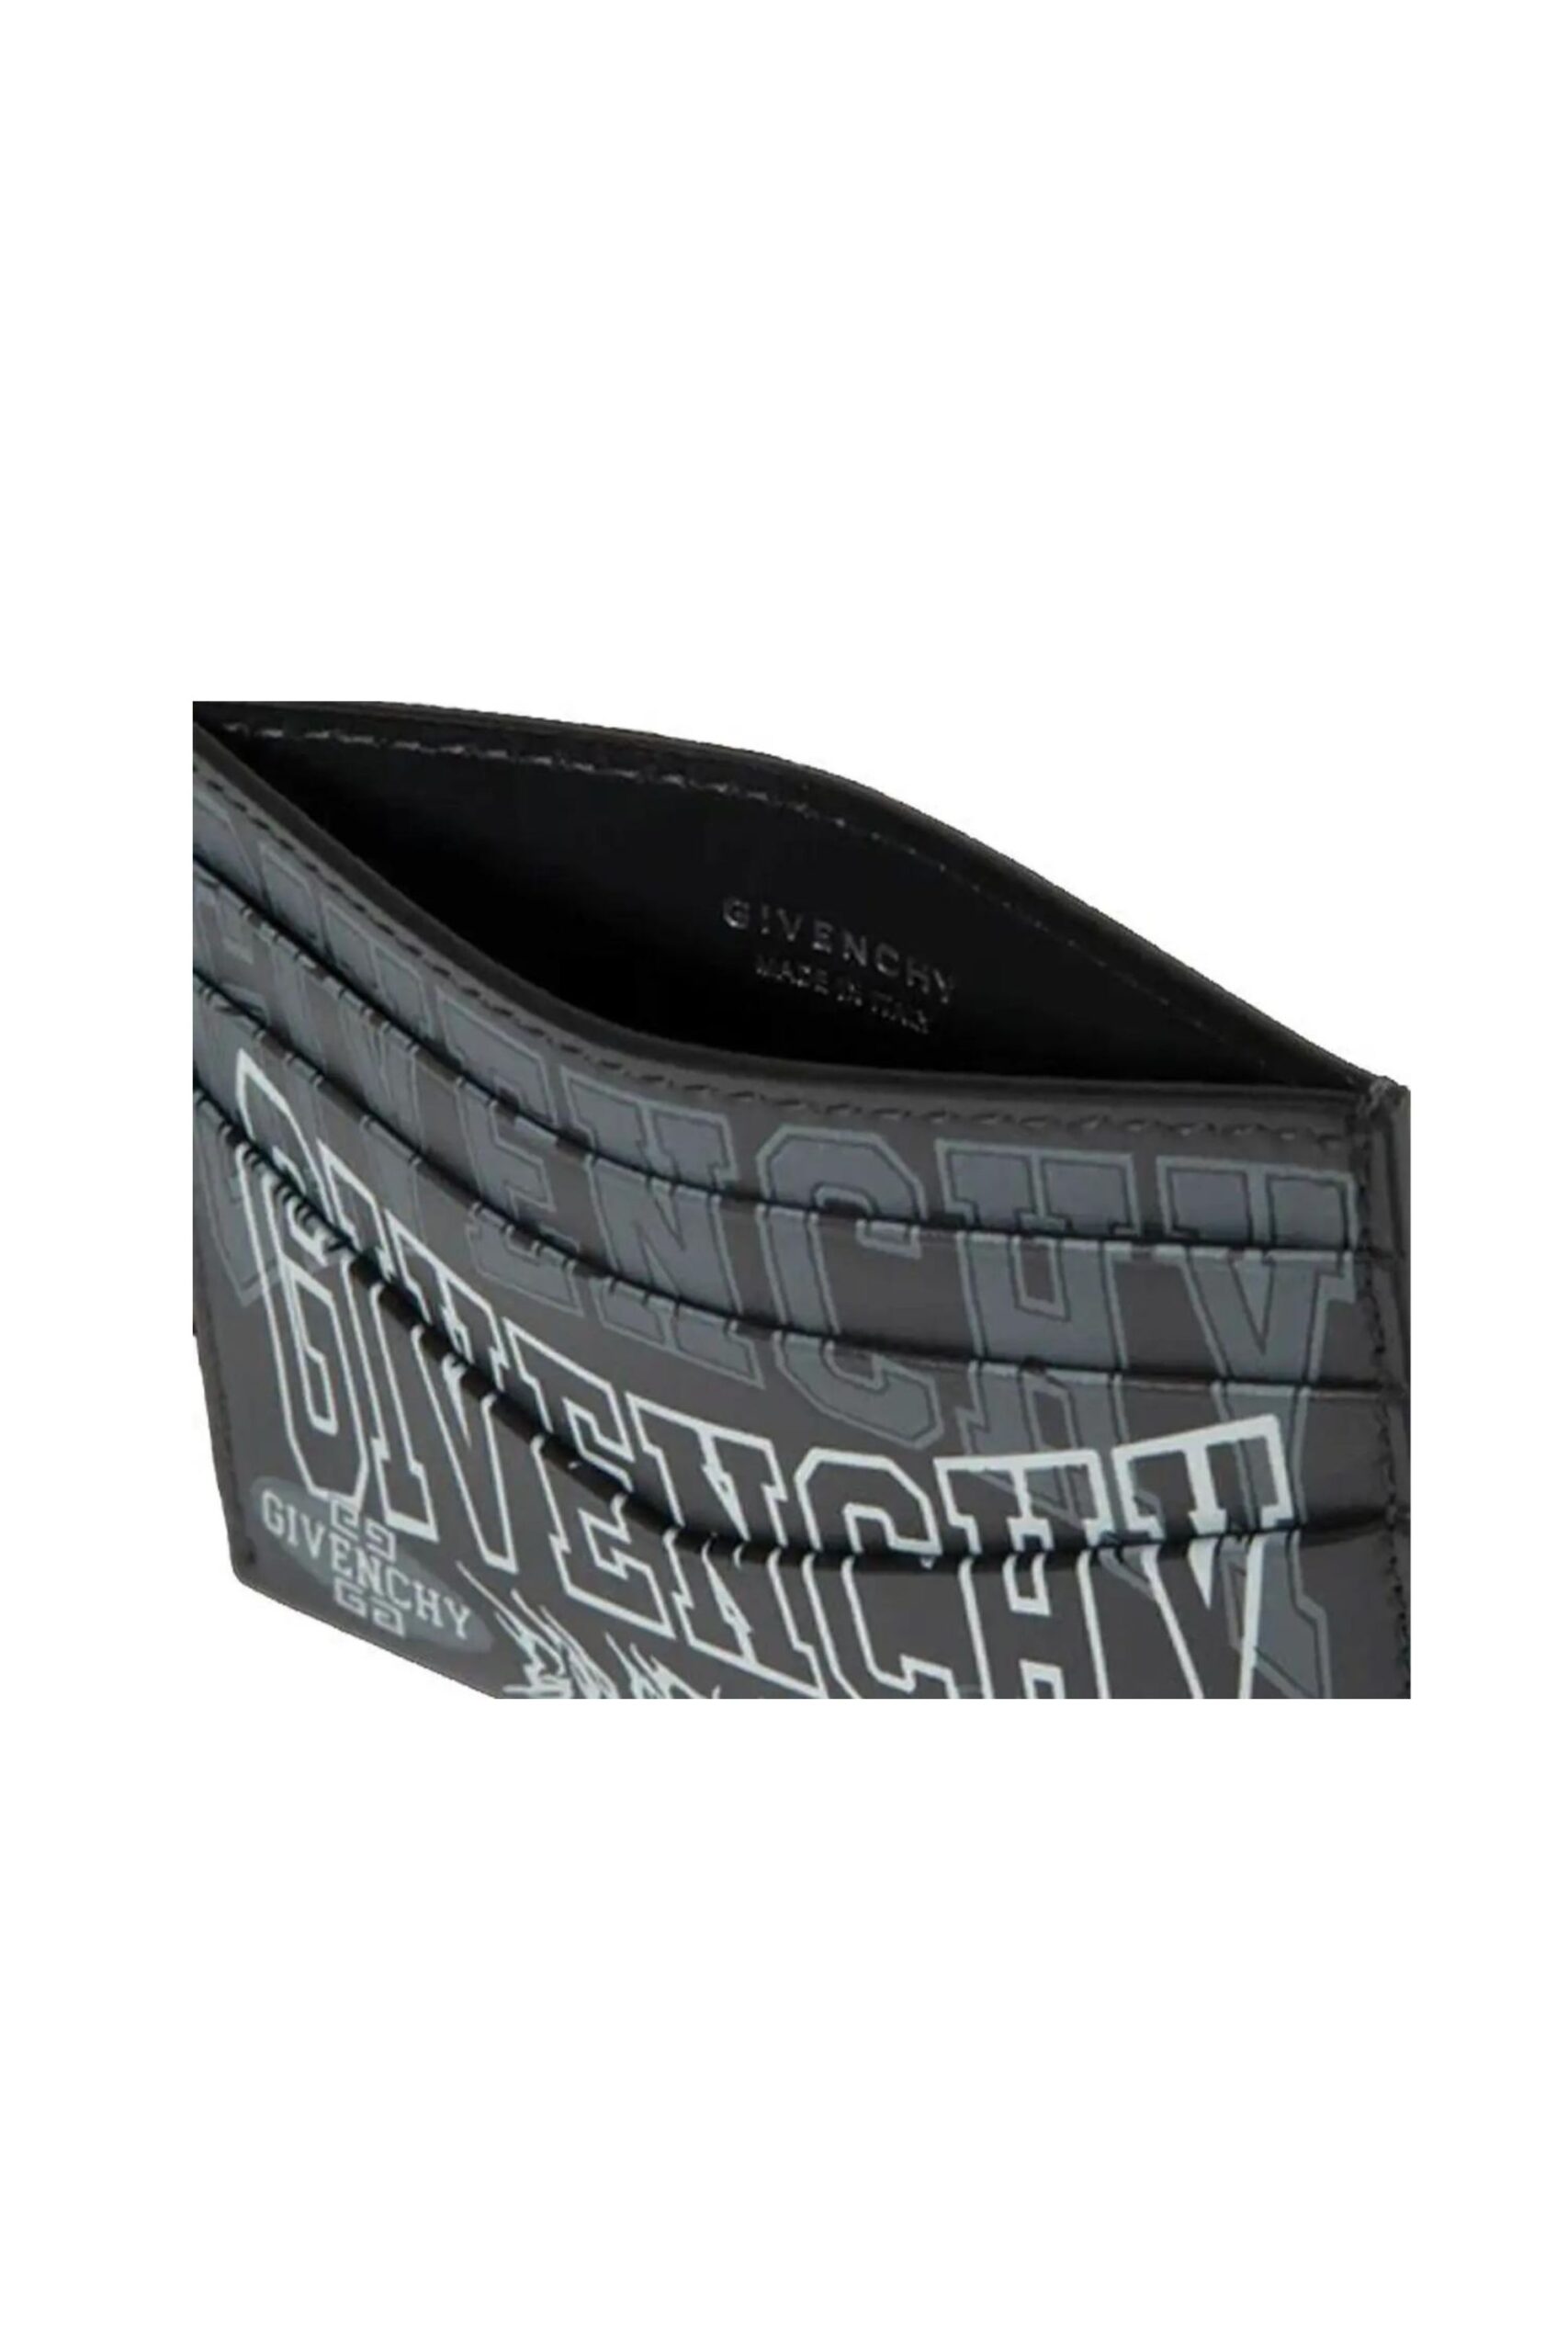 Givenchy portacarte con logo vista laterale